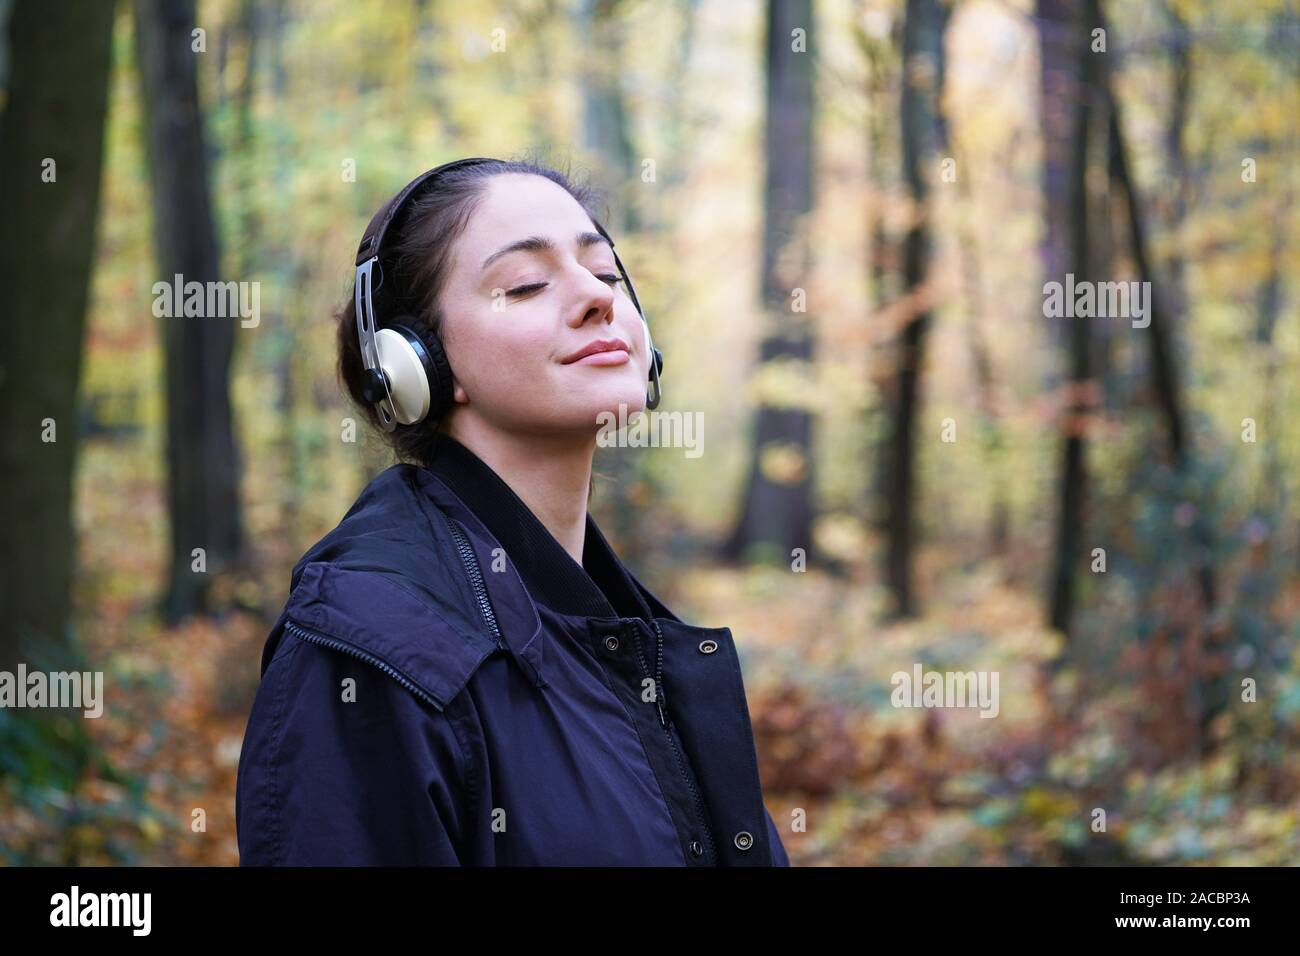 Junge Frau in ihrem 20s Abspielen von Musik mit drahtlosen Kopfhörern in Wald - candid Lebensstil im Freien im Herbst - mit Kopie Raum Stockfoto